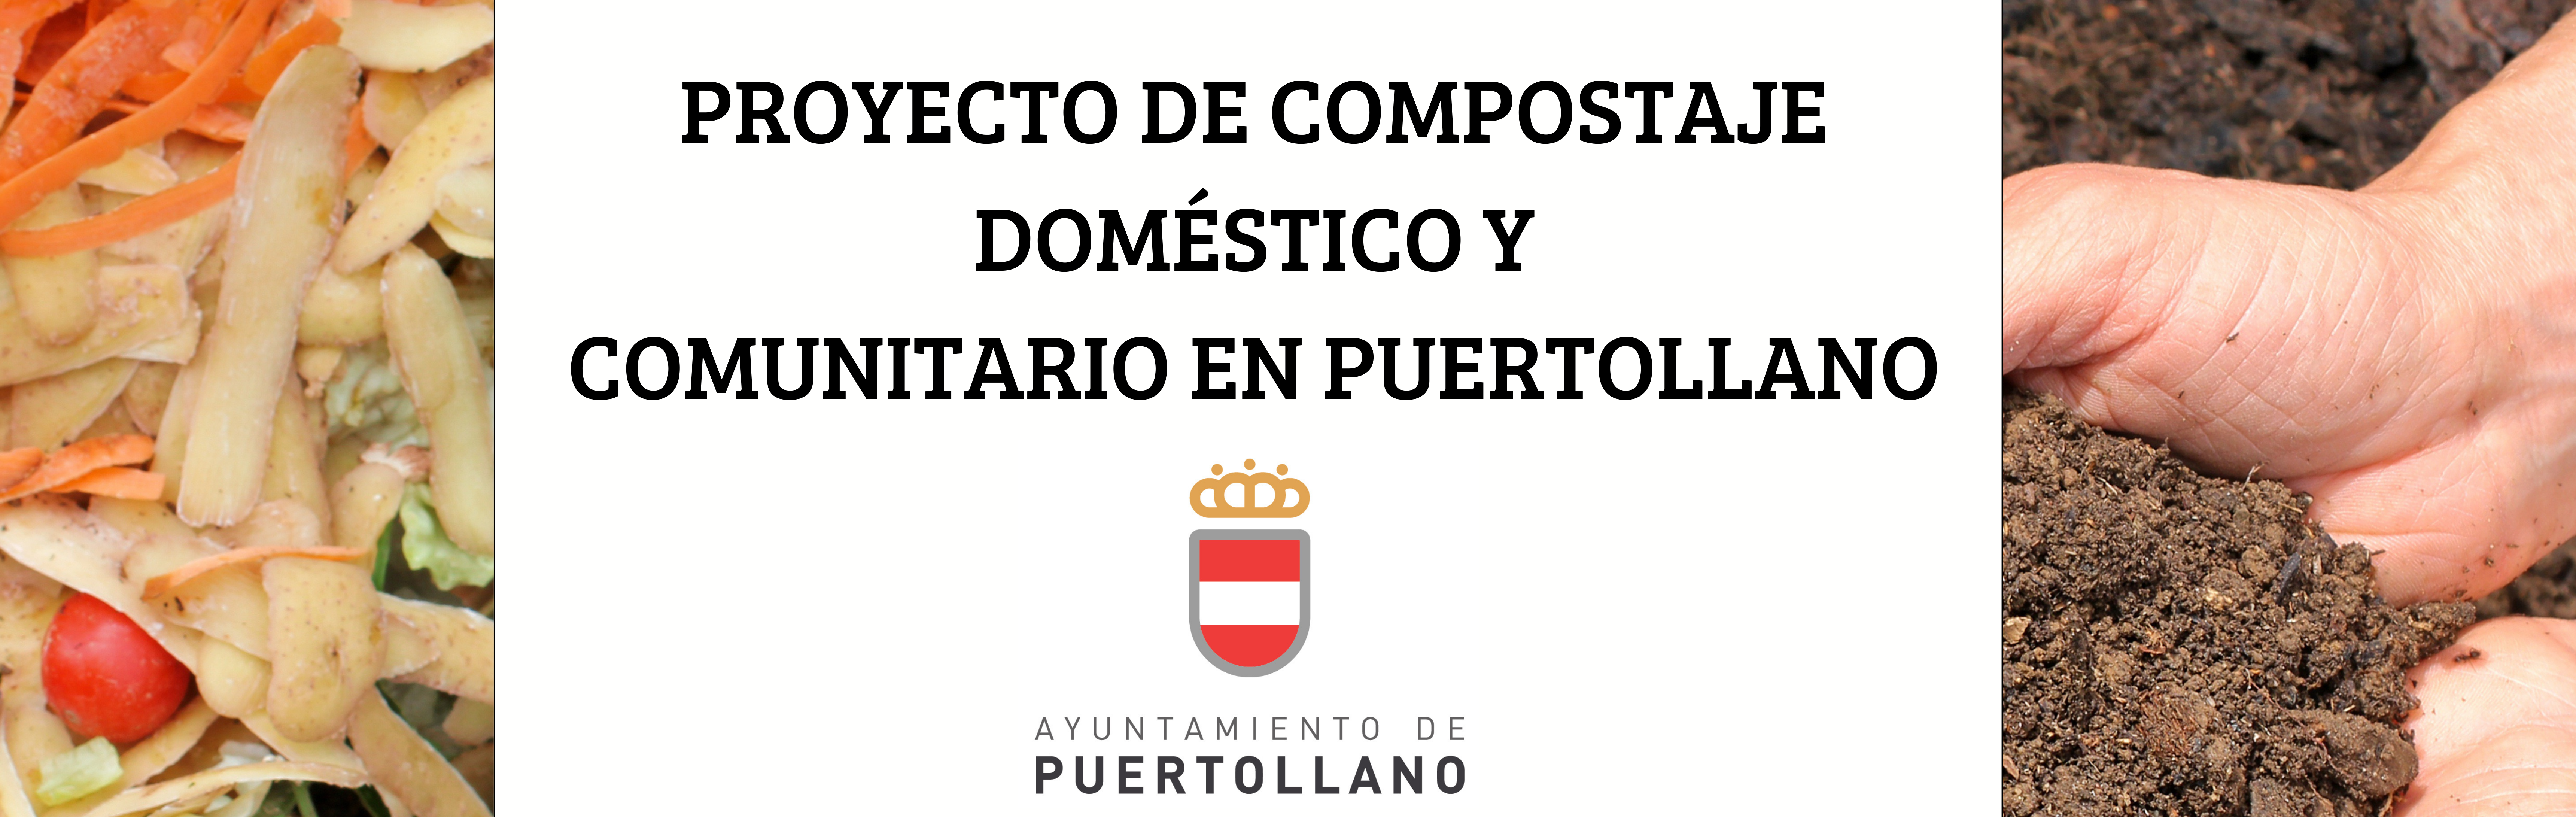 carga poco claro Discriminación sexual El Ayuntamiento de Puertollano pone en marcha una campaña de compostaje  doméstico y comunitario - Ayuntamiento de Puertollano